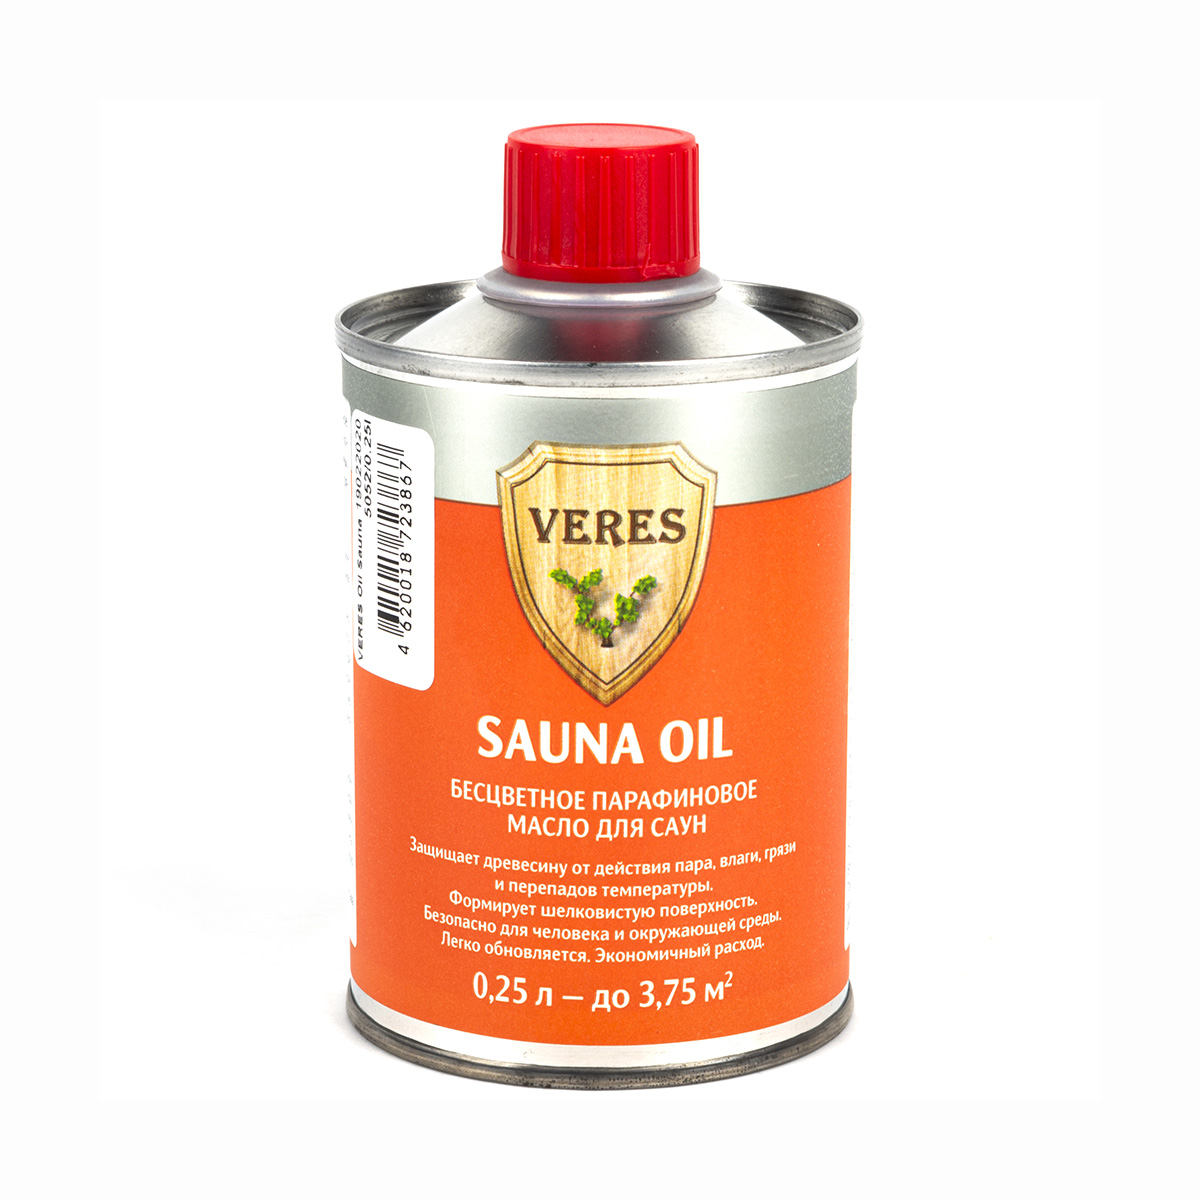 фото Масло для саун veres sauna oil, бесцветное, шелковистый блеск, 0,25 л